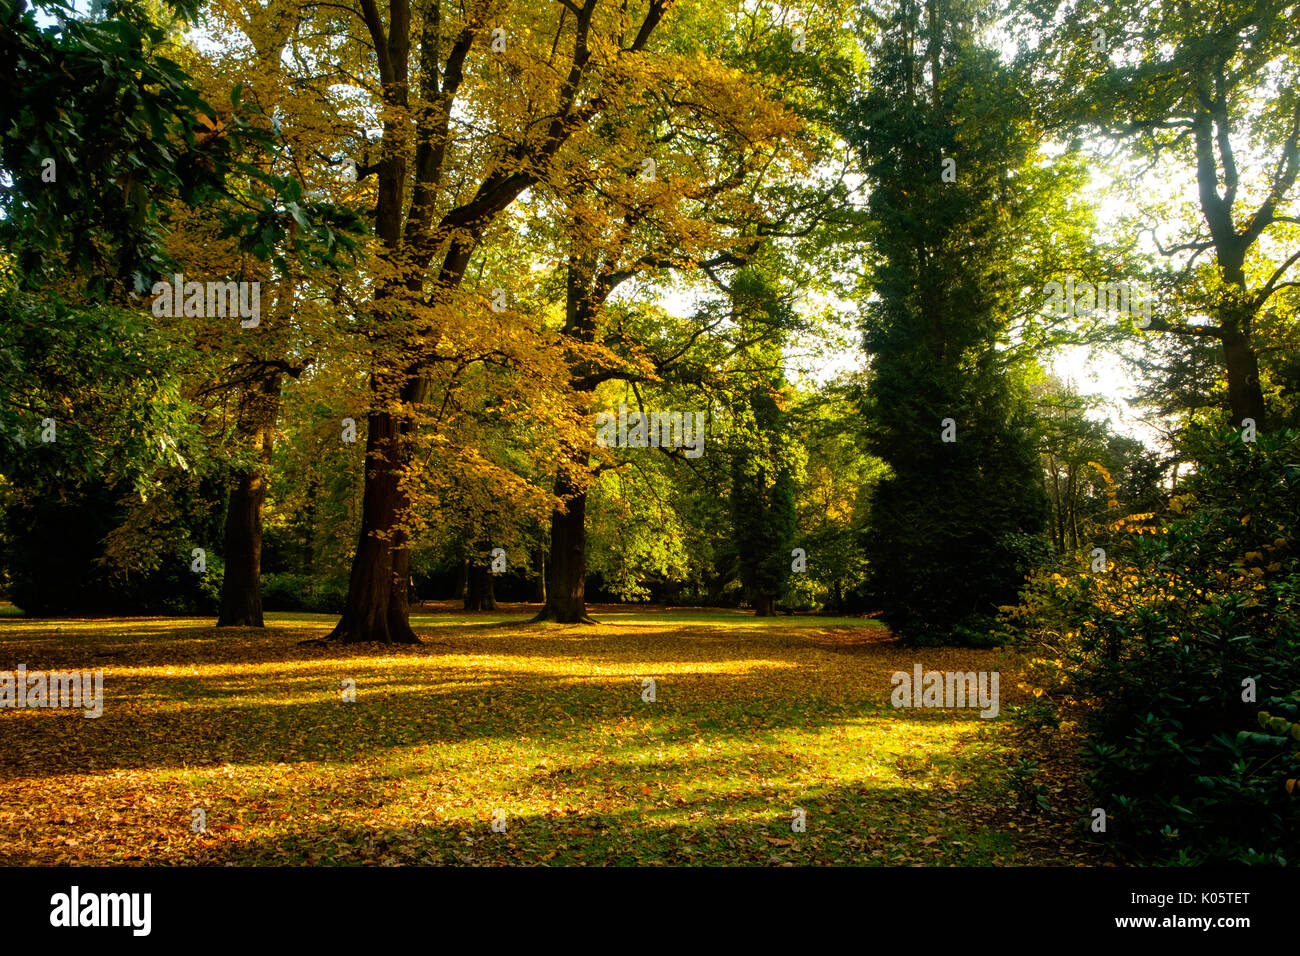 Autumn woodland at Clumber Park, Nottinghamshire, UK Stock Photo